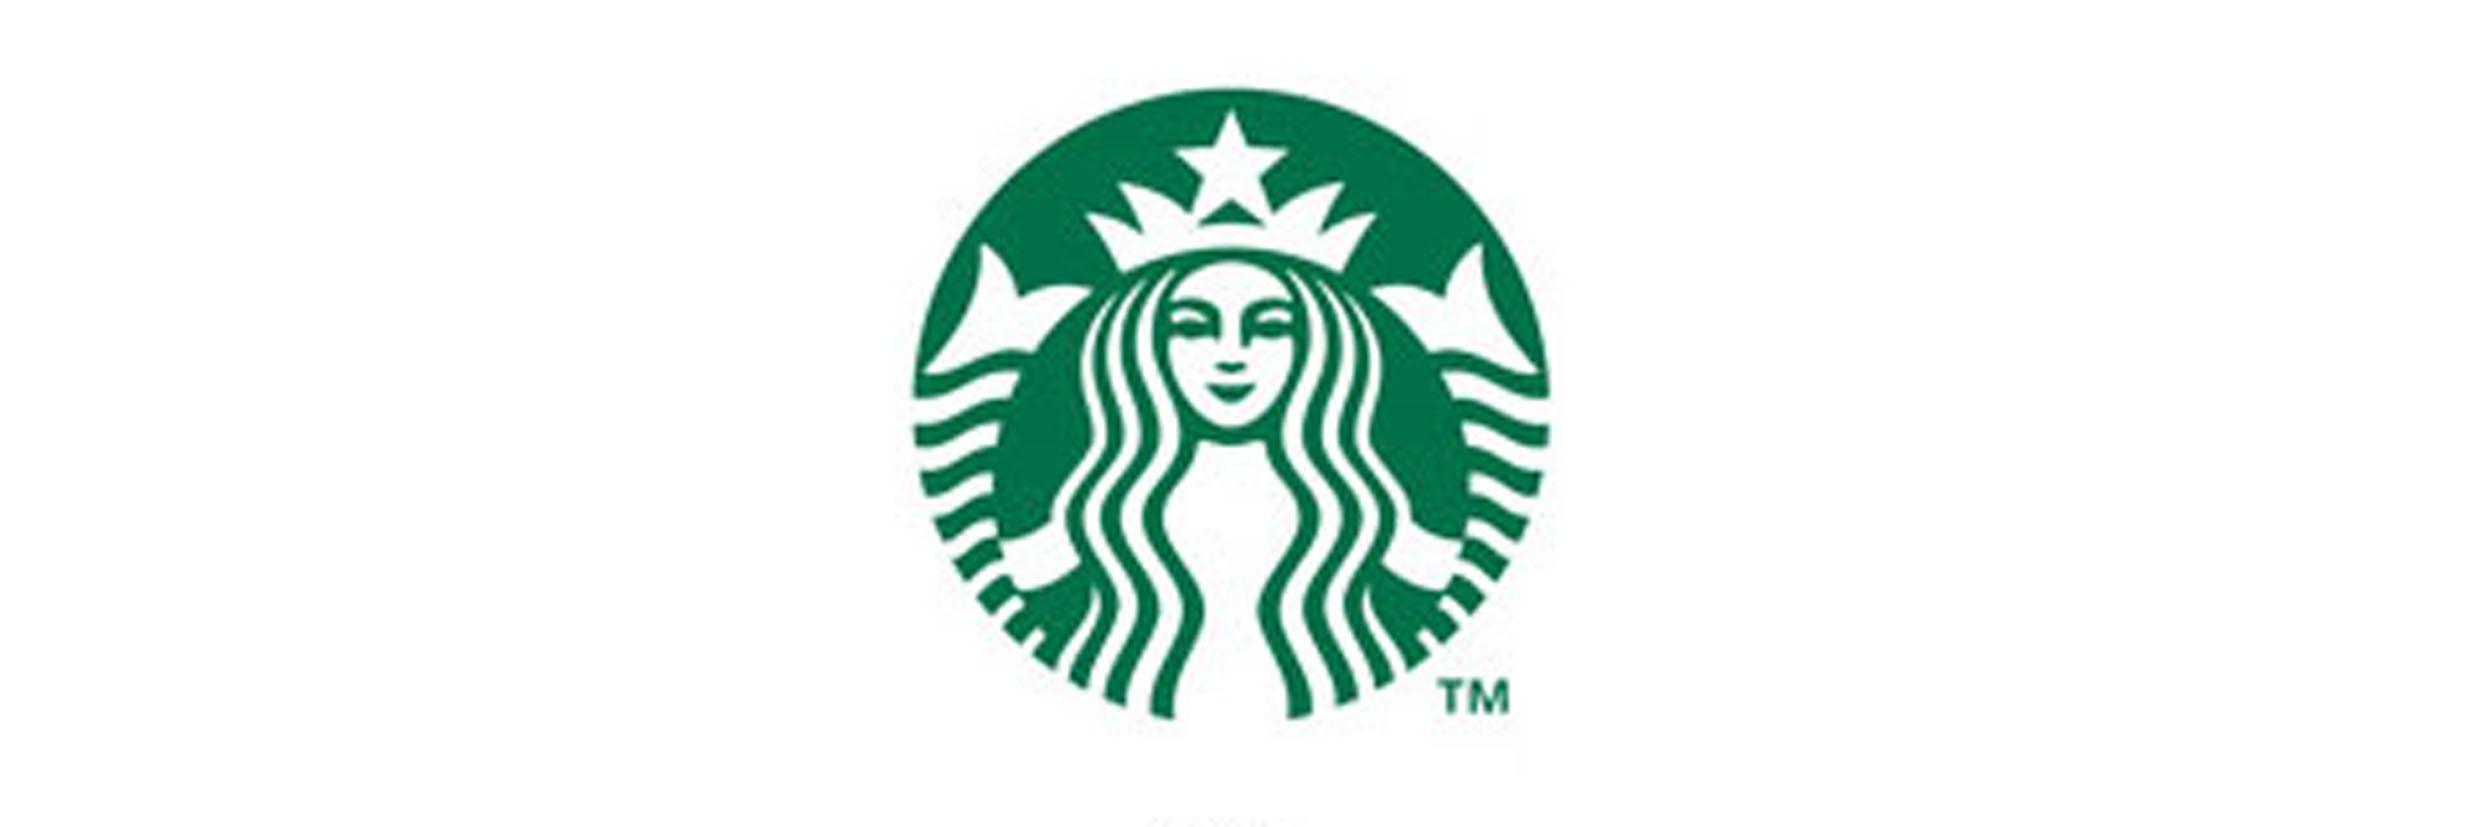 Mini Galaxy Starbucks Logo - Mini starbucks Logos